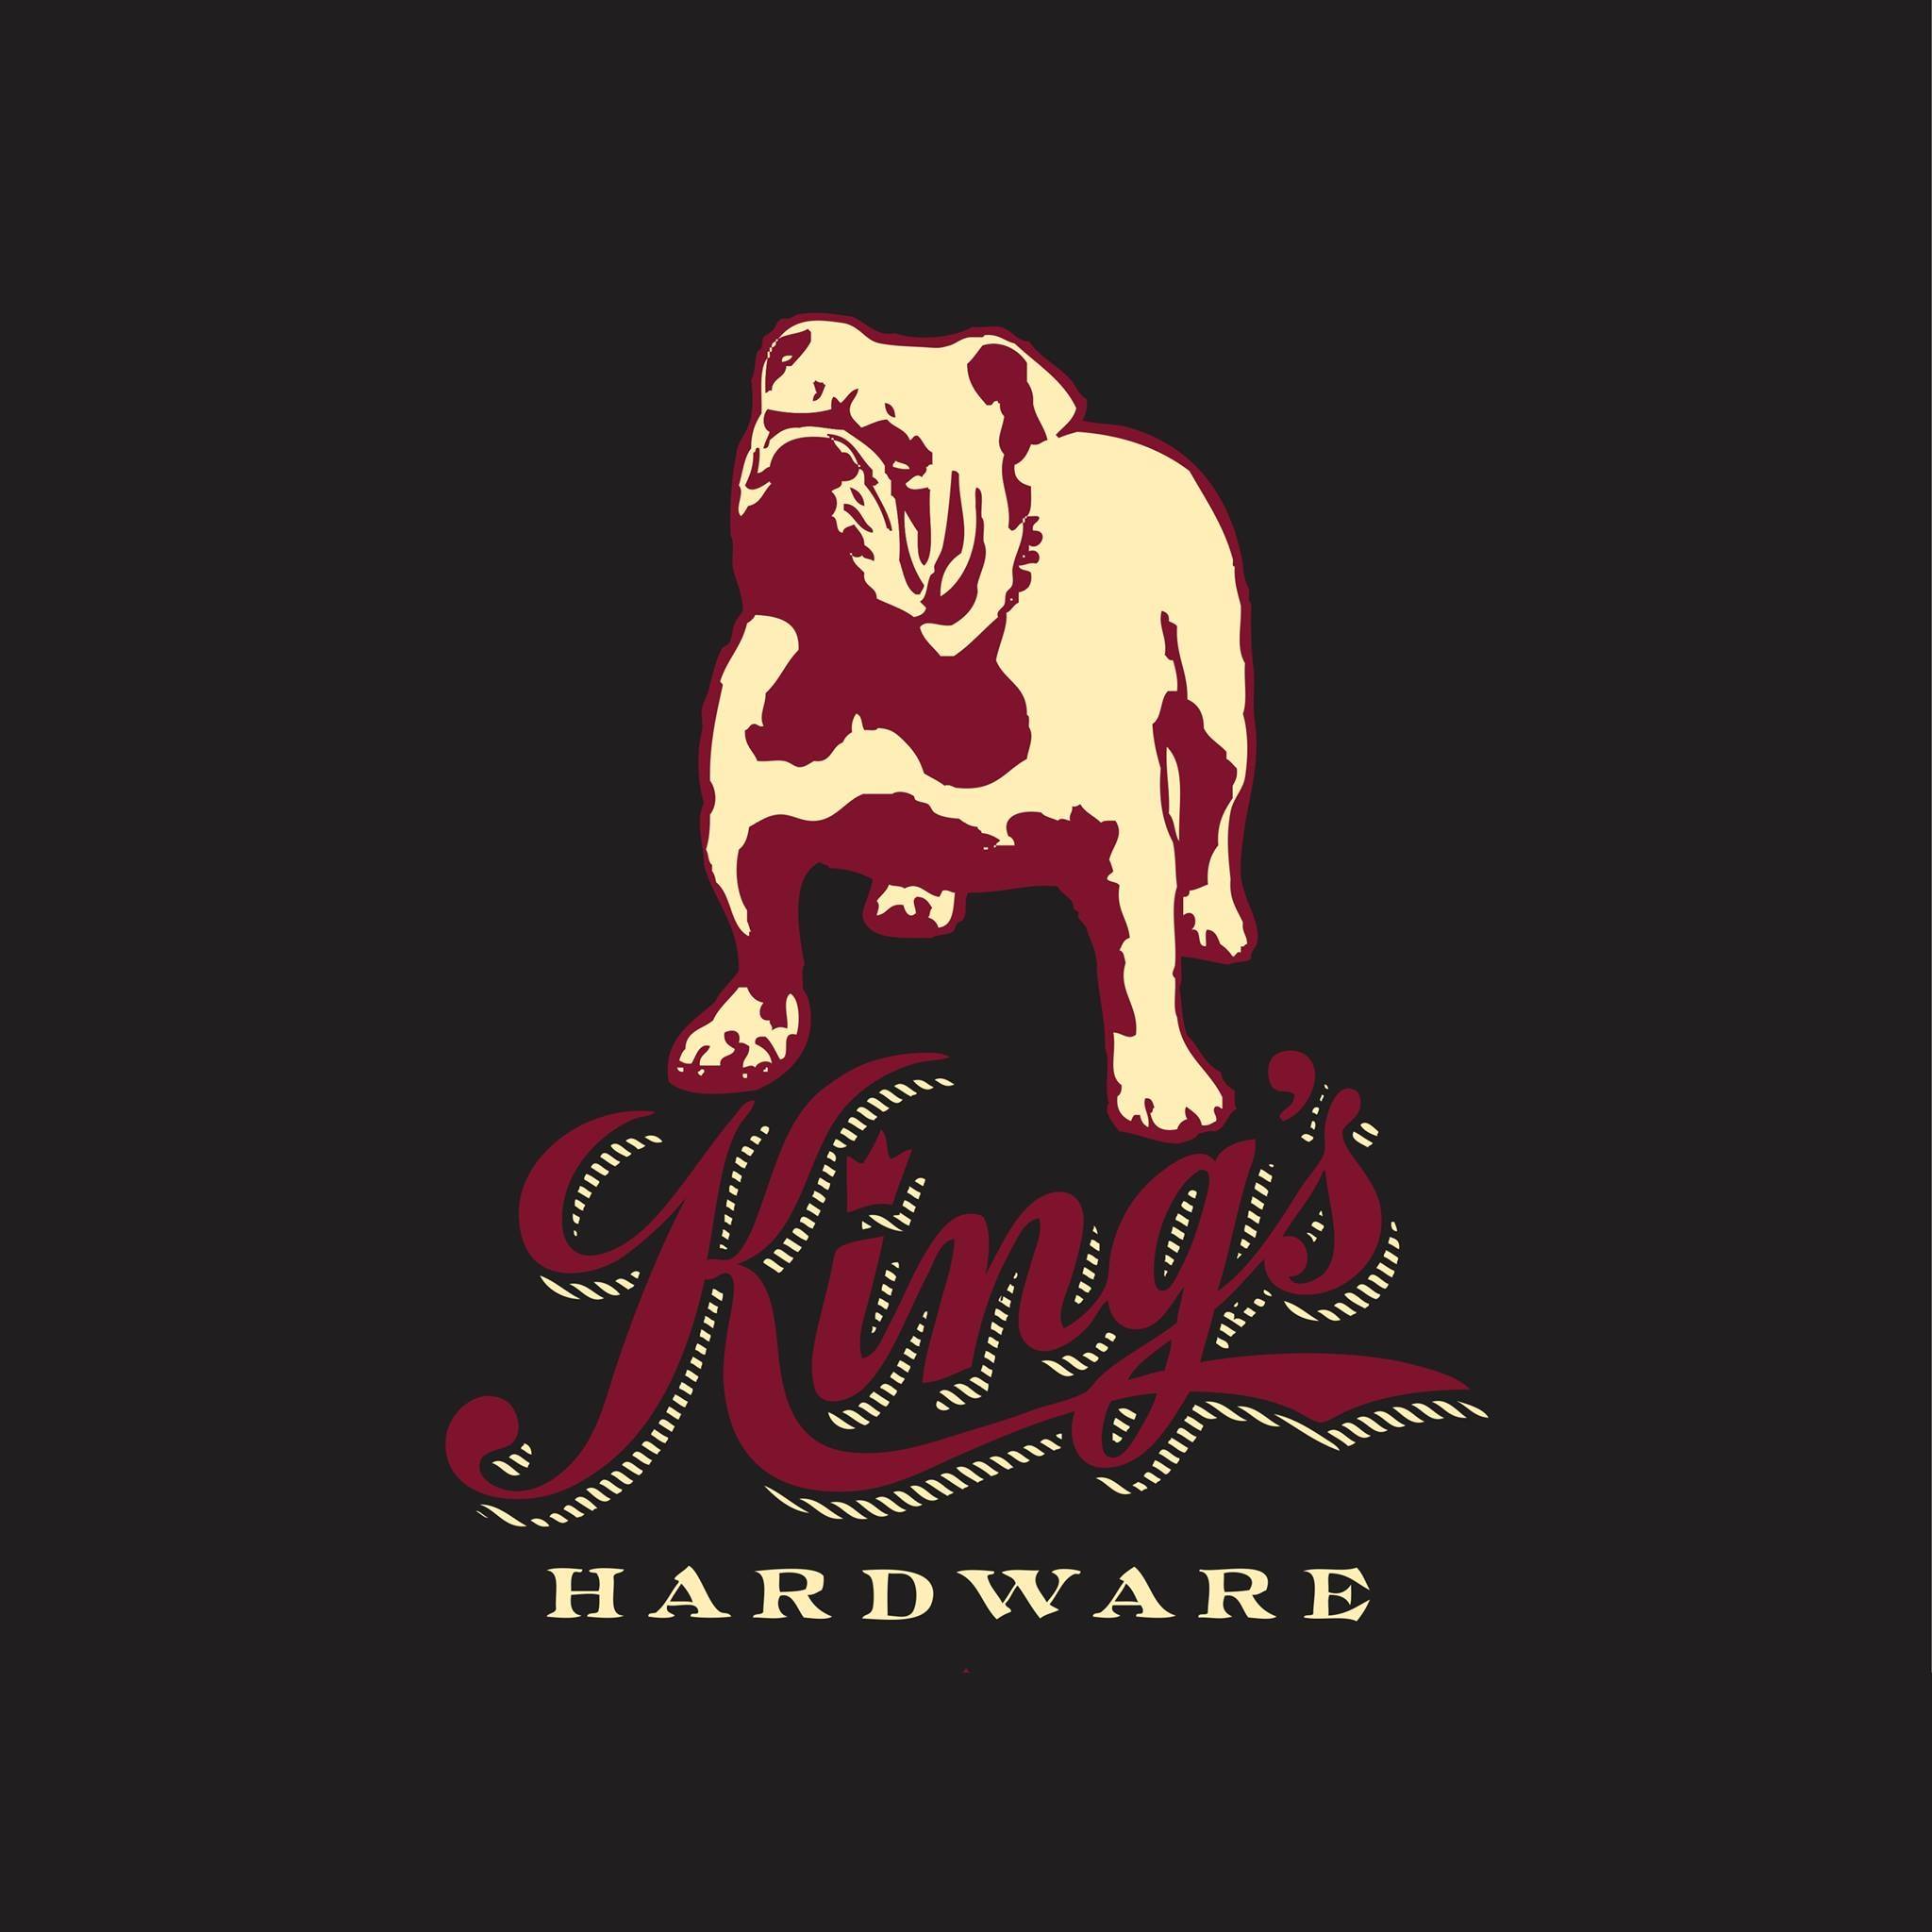 Company logo of King's Hardware